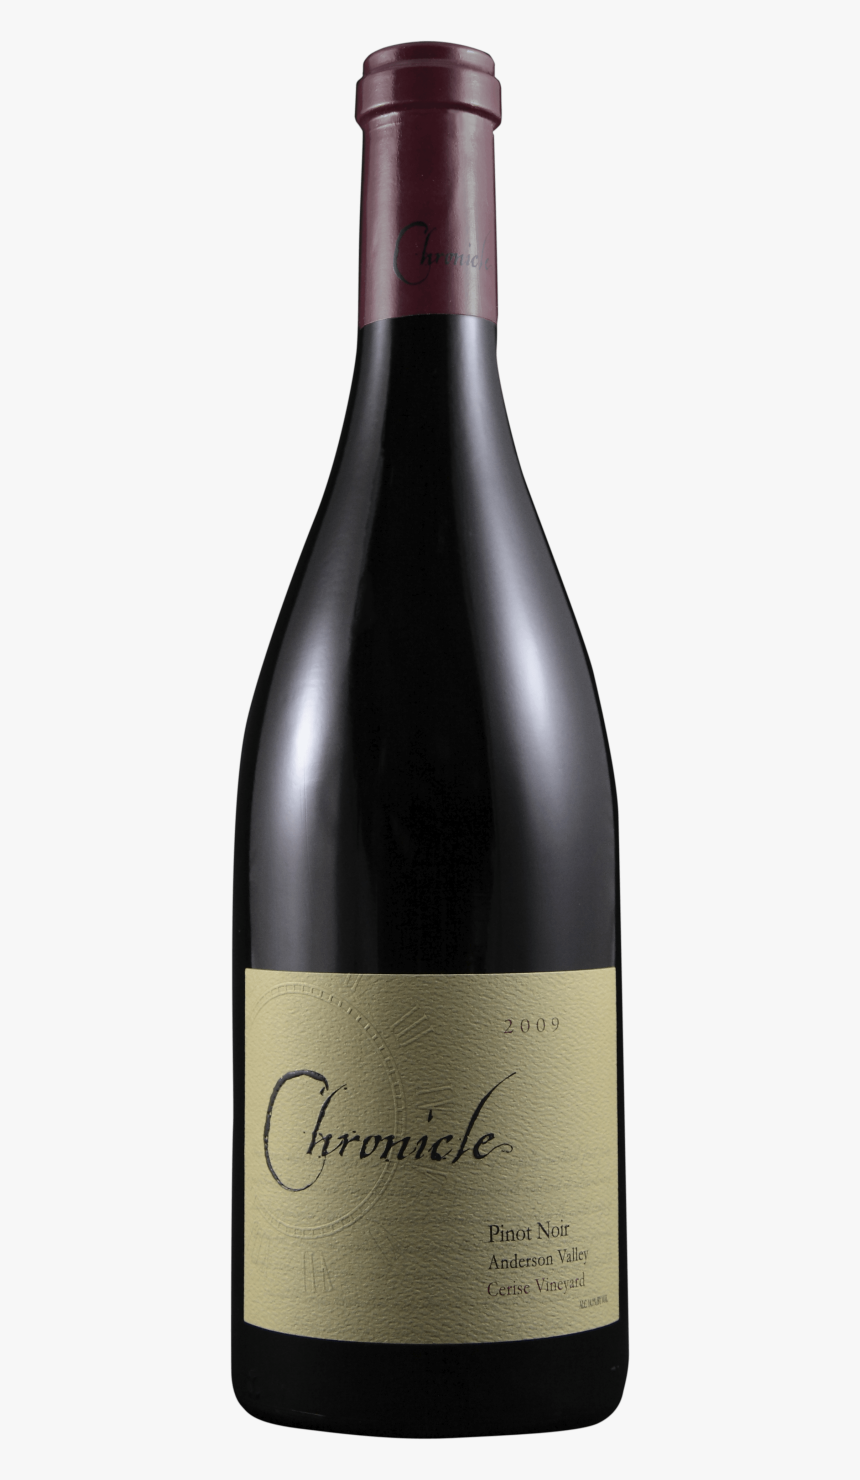 Bottle Png Image Download Image Of Bottle"
								 - Bottle Of Pinot Noir Transparent Background, Png Download, Free Download